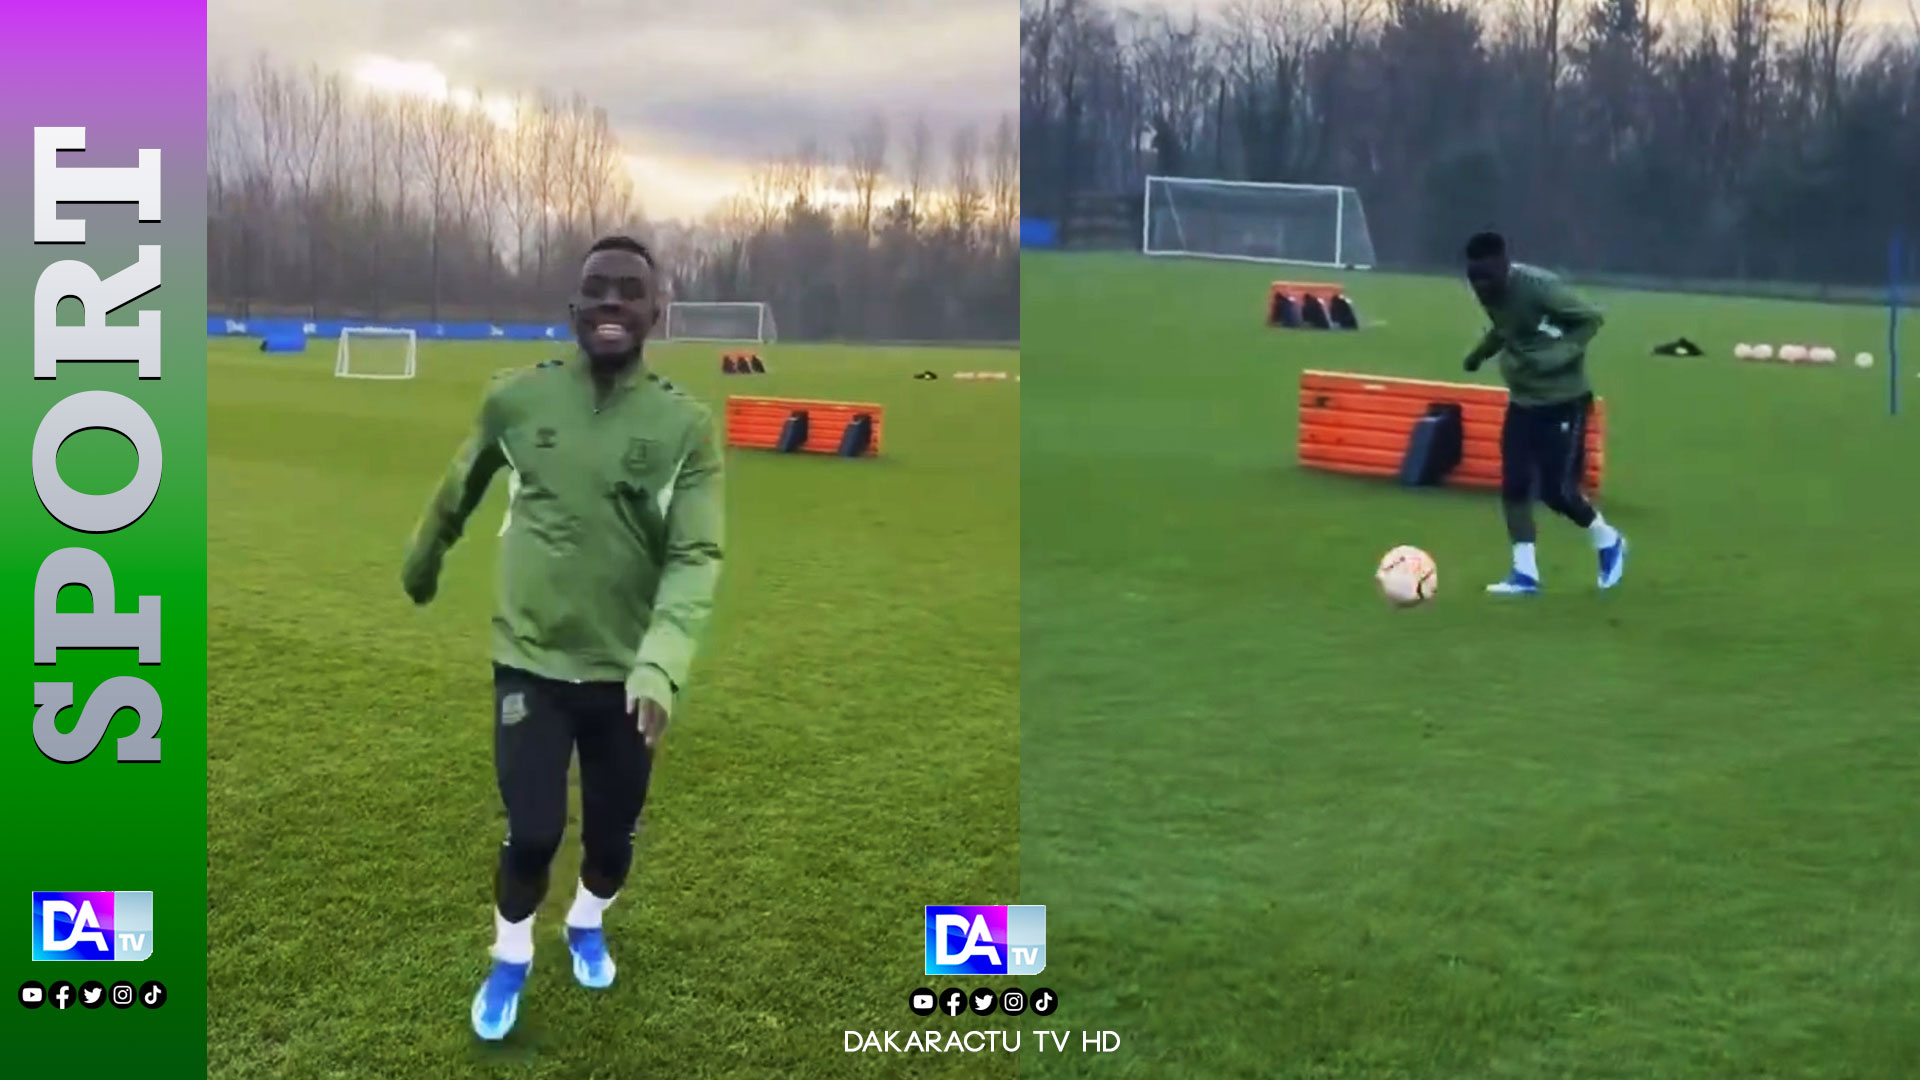 Équipe nationale : Idrissa Gana Gueye a repris l'entraînement avec son club Everton…